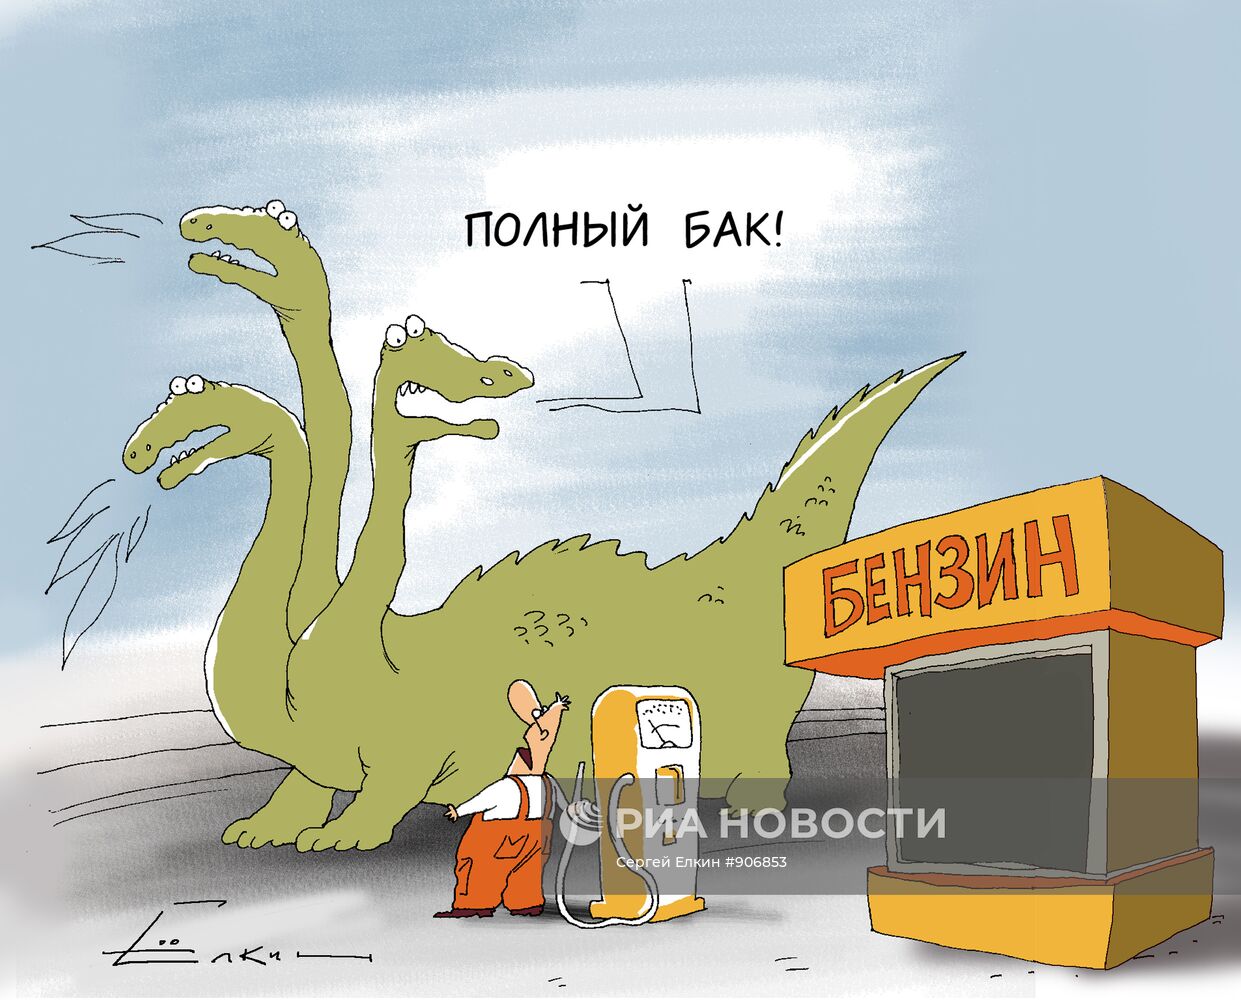 Ограничение продажи бензина в российских регионах